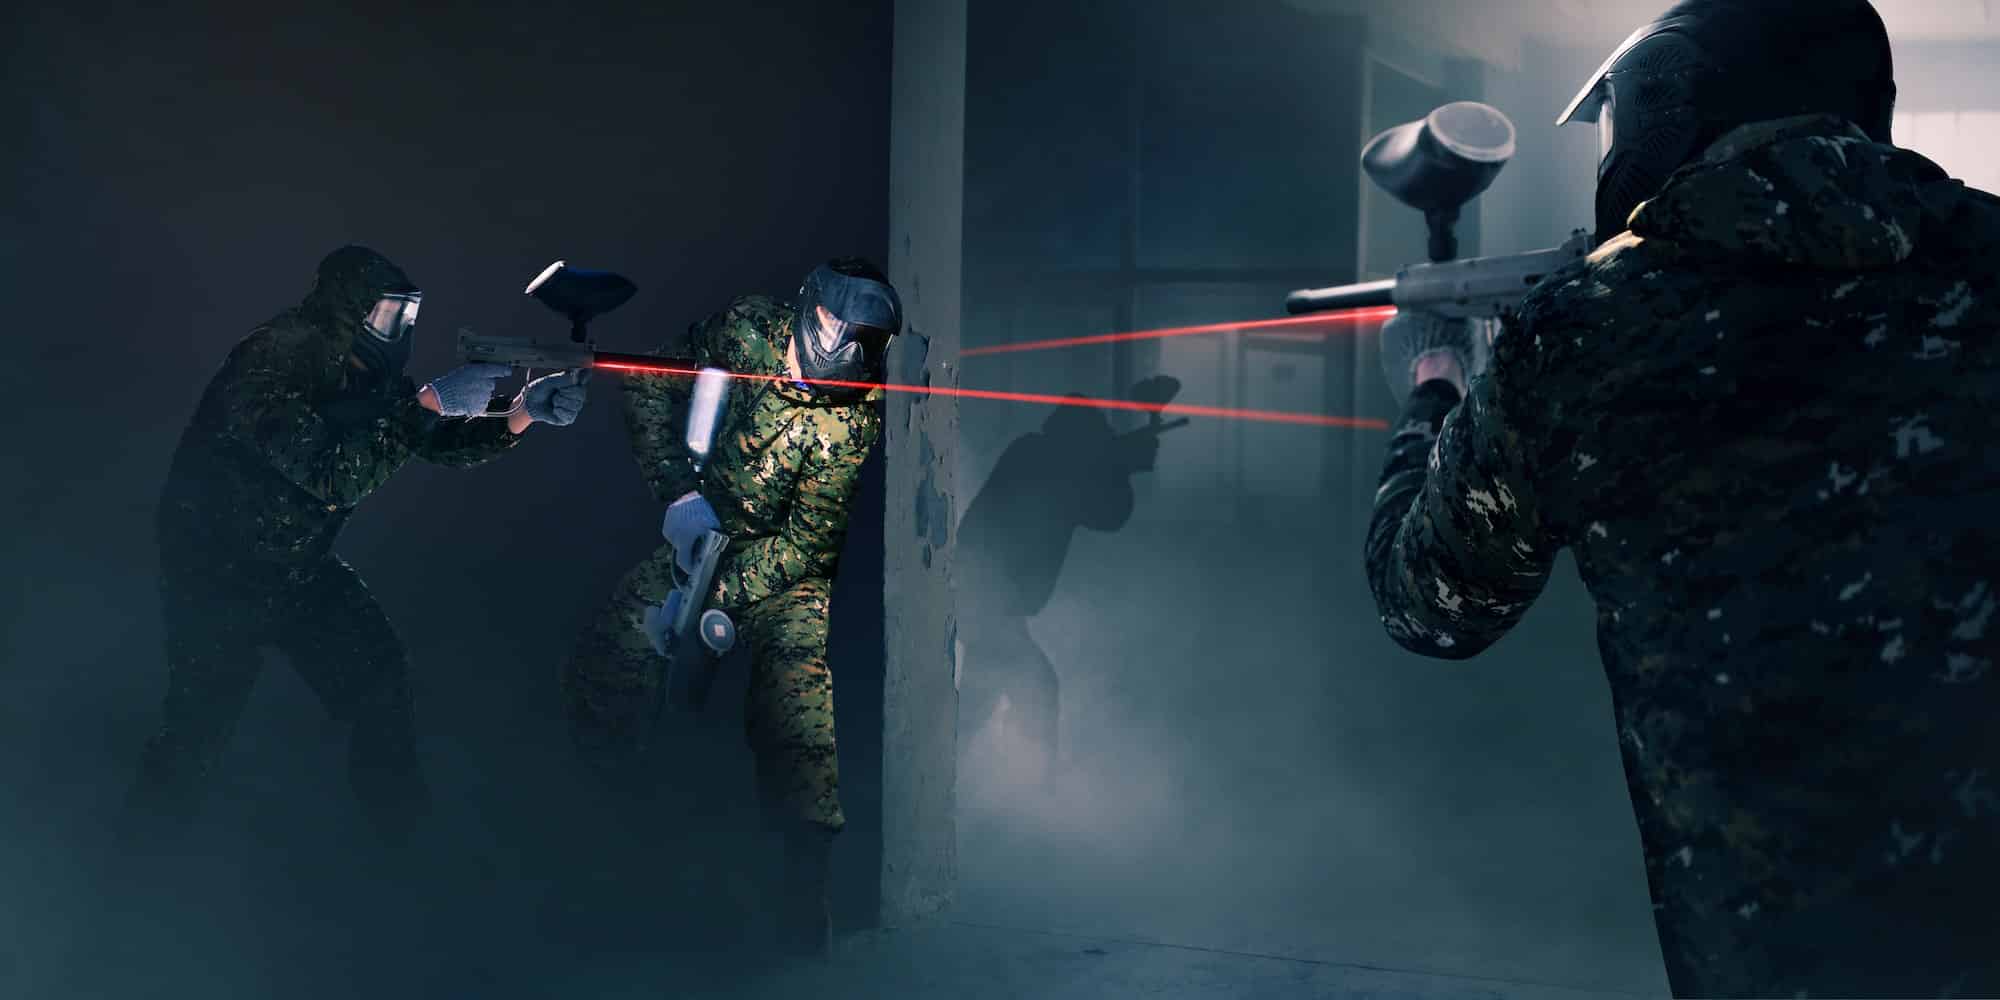 Pourquoi choisir un laser game comme animations évènementielles?